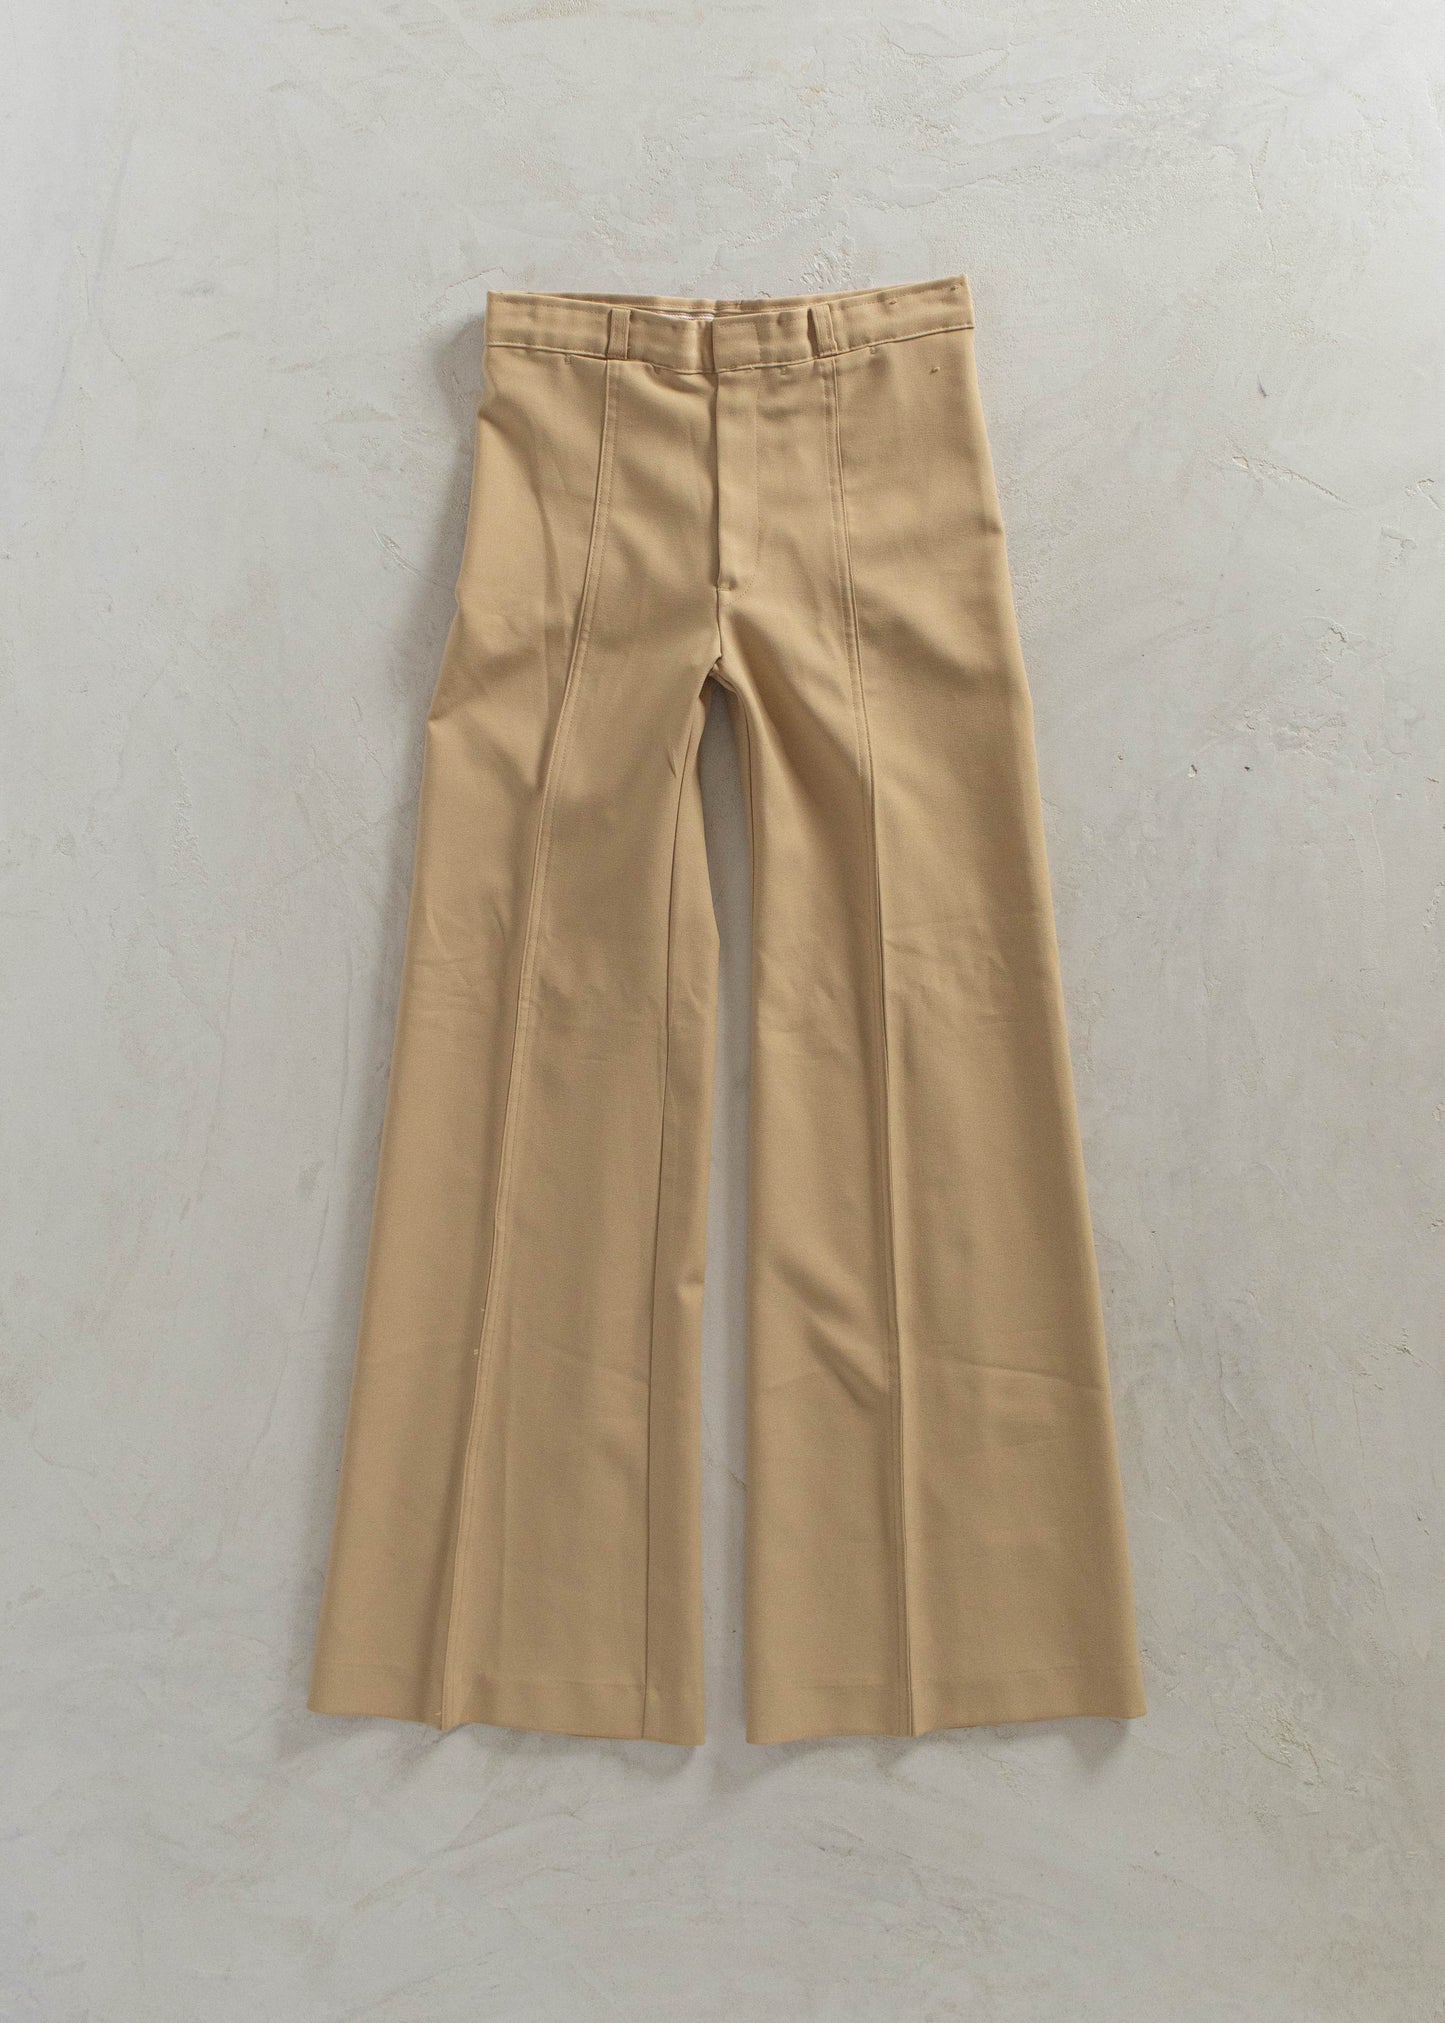 1970s Flare Trousers Size Women's 26 Men's 30